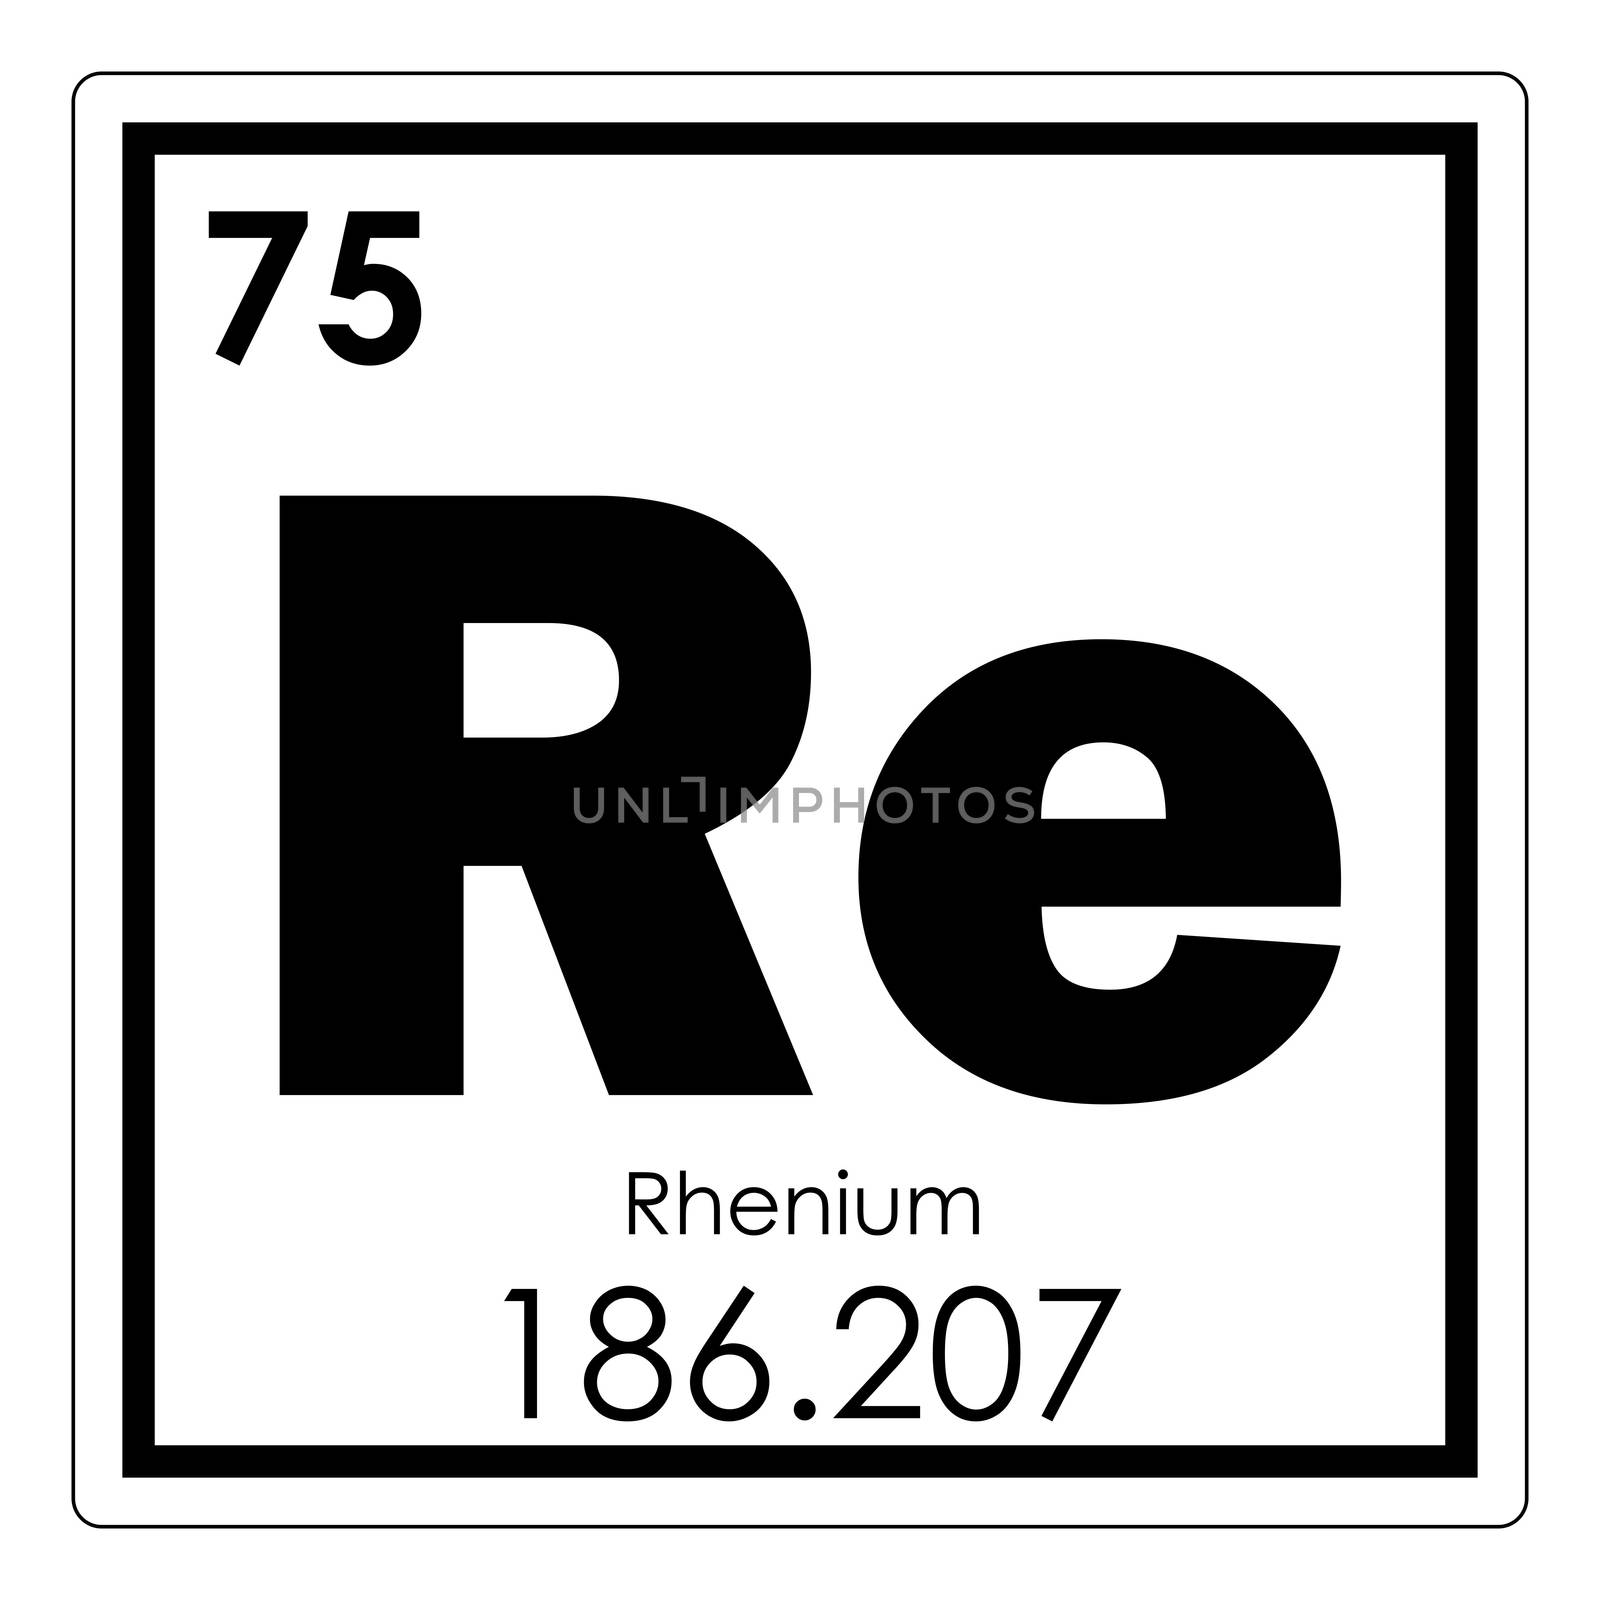 Rhenium chemical element periodic table science symbol